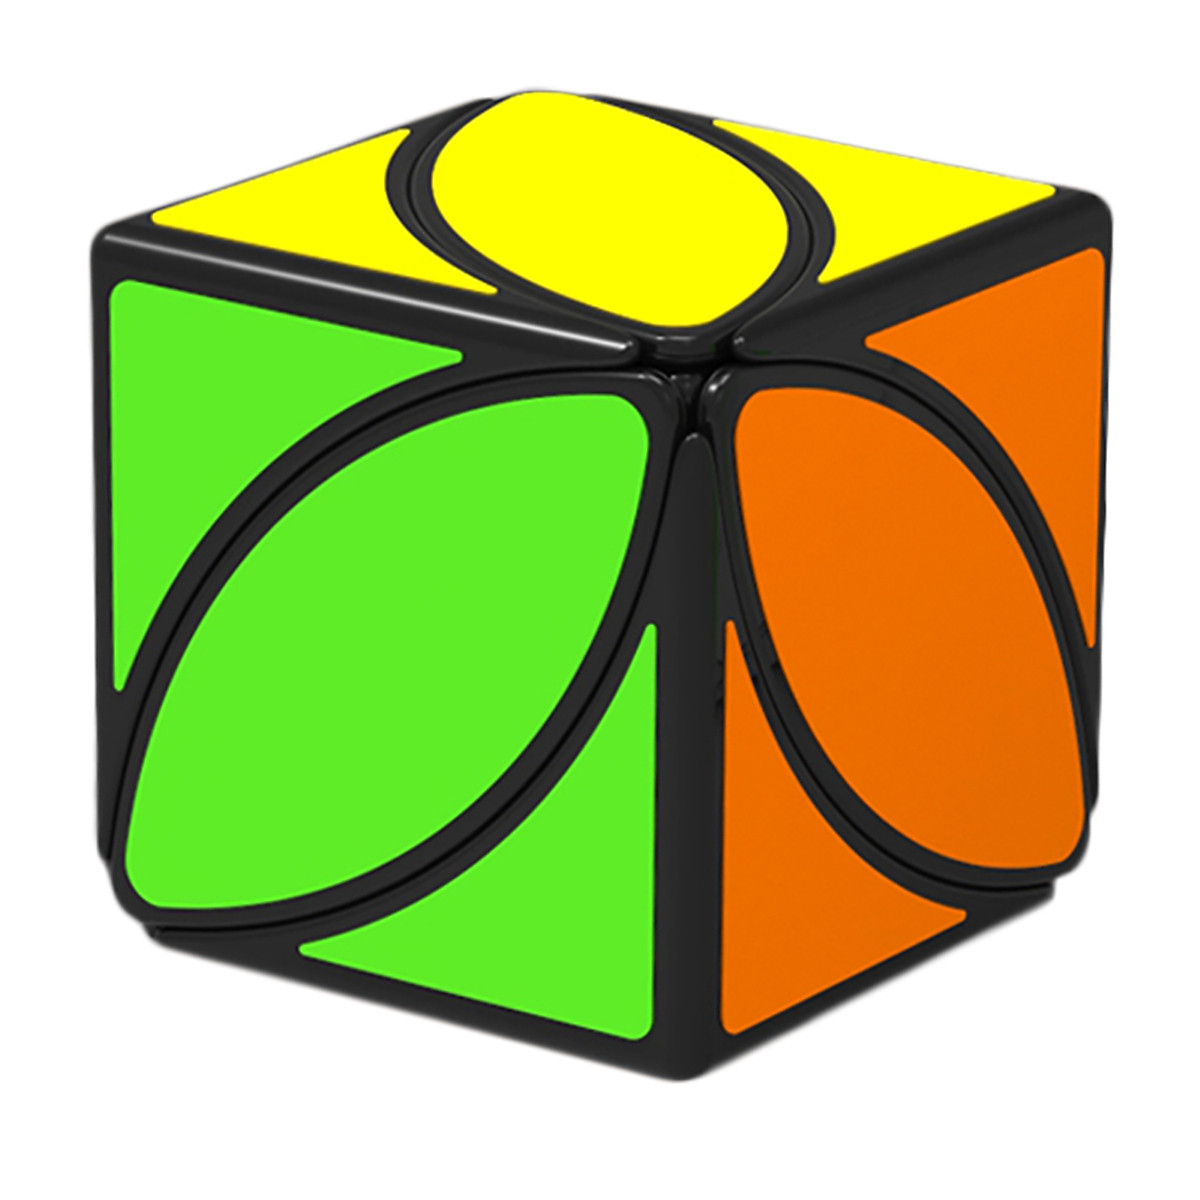 Bộ sưu tập đồ chơi trí tuệ Rubik Qiyi – Phiên bản viền đen (Các biến thể)